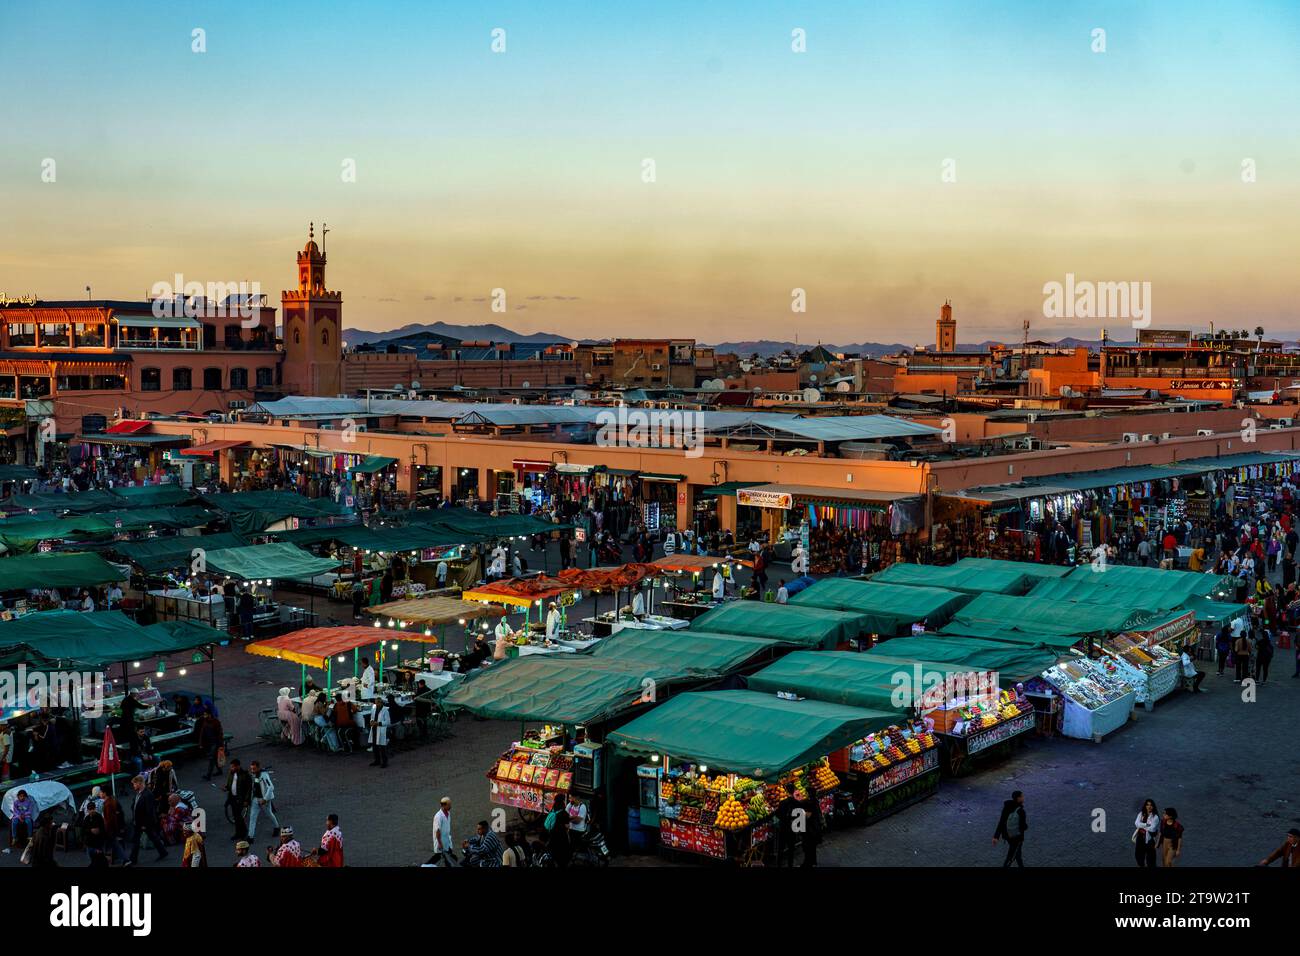 Afrique du Nord. Maroc. Marrakech. Activité nocturne sur la place Jemaa el Fna au coucher du soleil Banque D'Images